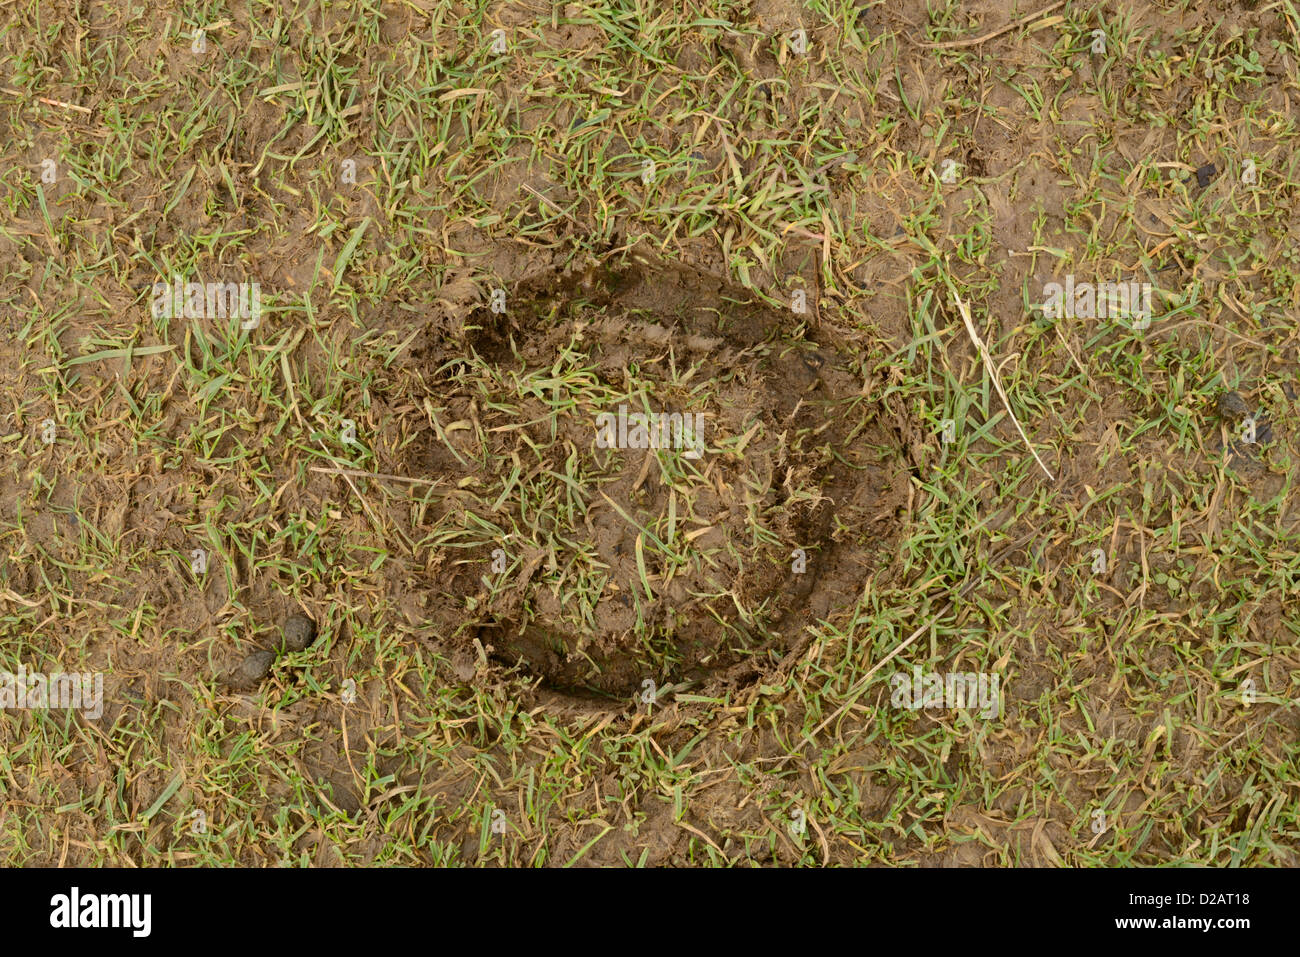 Print of horseshoe in muddy grass Stock Photo